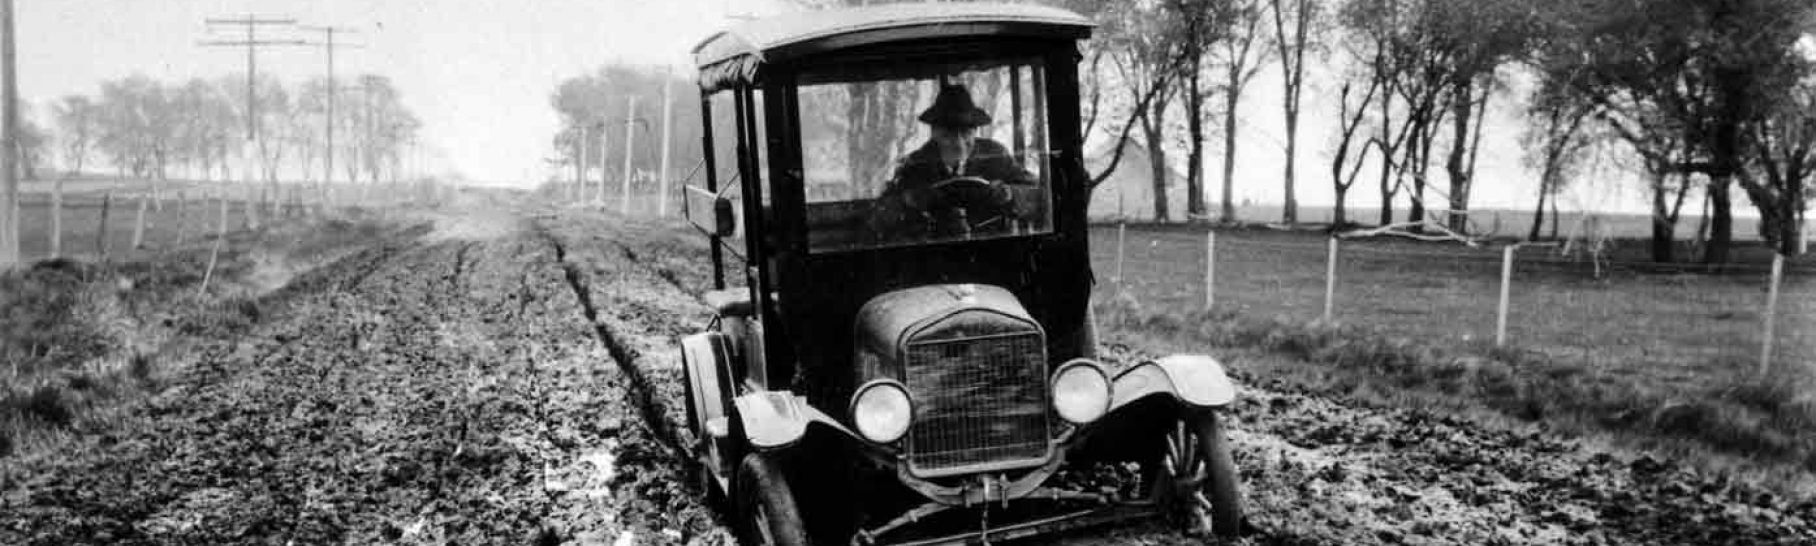 Car stuck in muddy road. ca. 1920.